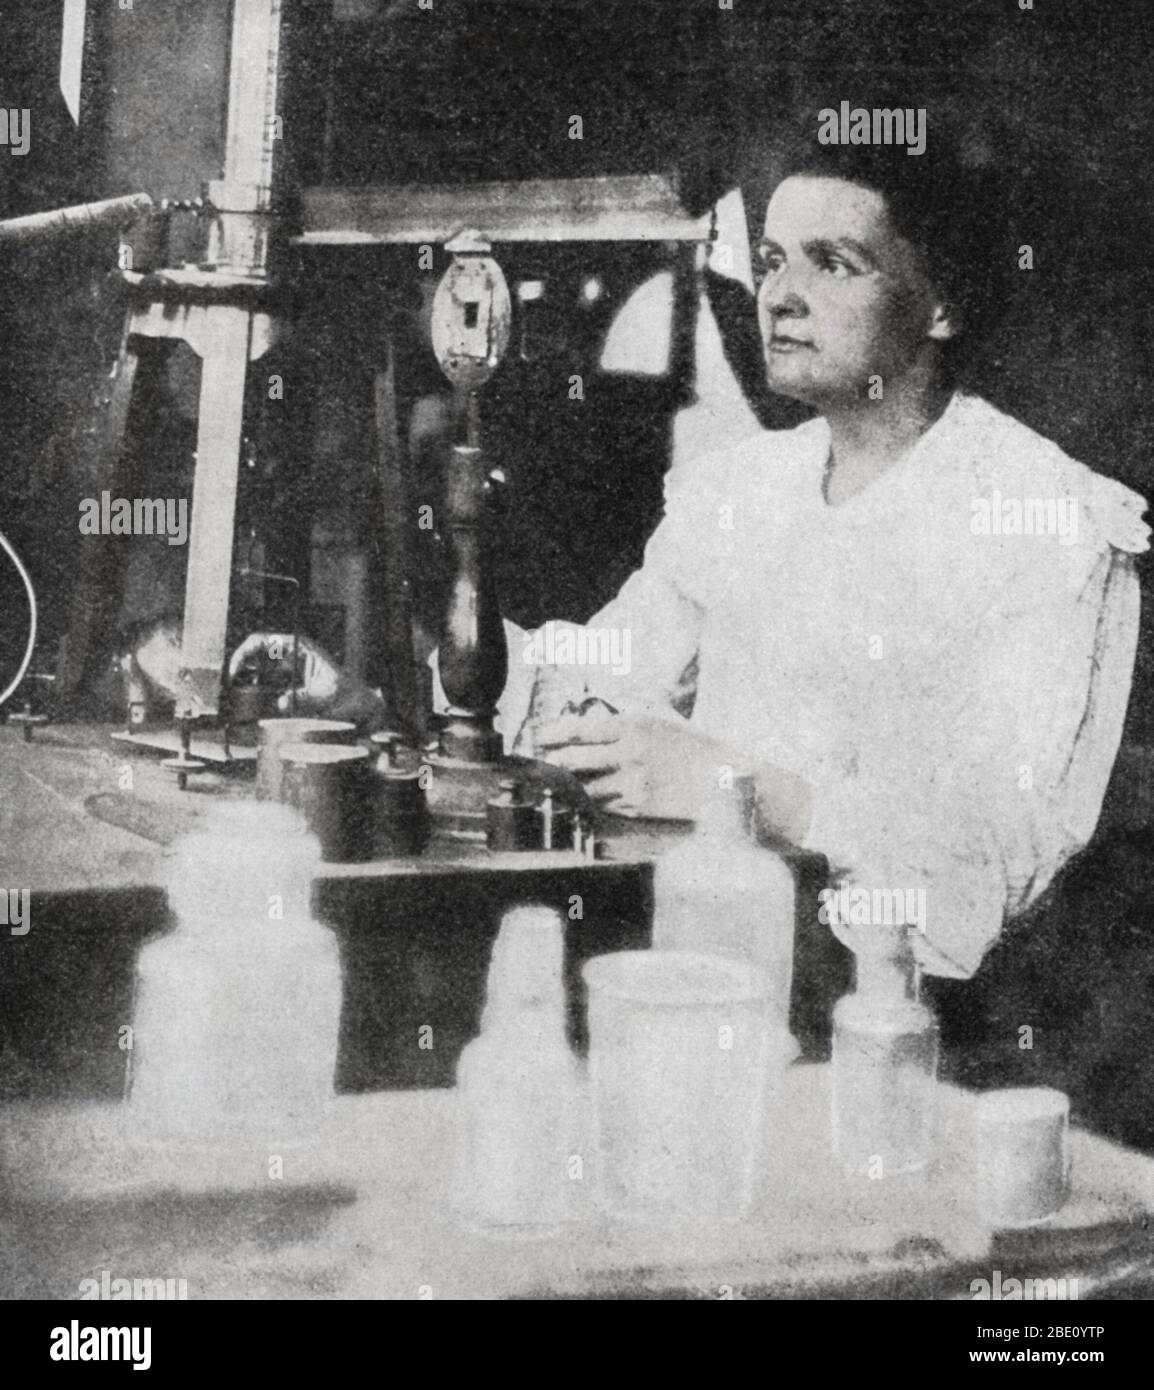 Marie Curie (7. November 1867 - 4. Juli 1934) war eine polnisch-französische Physikerin und Chemikerin, die für ihre bahnbrechenden Forschungen über Radioaktivität berühmt war. Sie war die erste Person, die mit zwei Nobelpreisen ausgezeichnet wurde: Physik und Chemie. Ihren Nobelpreis für Physik teilte sie 1903 mit ihrem Mann Pierre Curie und dem Physiker Henri Becquerel. Sie war die alleinige Preisträgerin des Nobelpreises für Chemie 1911. Curie war die erste Frau, die einen Nobelpreis erhielt, die bisher einzige Frau, die in zwei Bereichen gewann, und die einzige, die in mehreren Wissenschaften siegt. Ihre Leistungen beinhalteten eine Theorie der Radioaktivität (ein Begriff tha Stockfoto